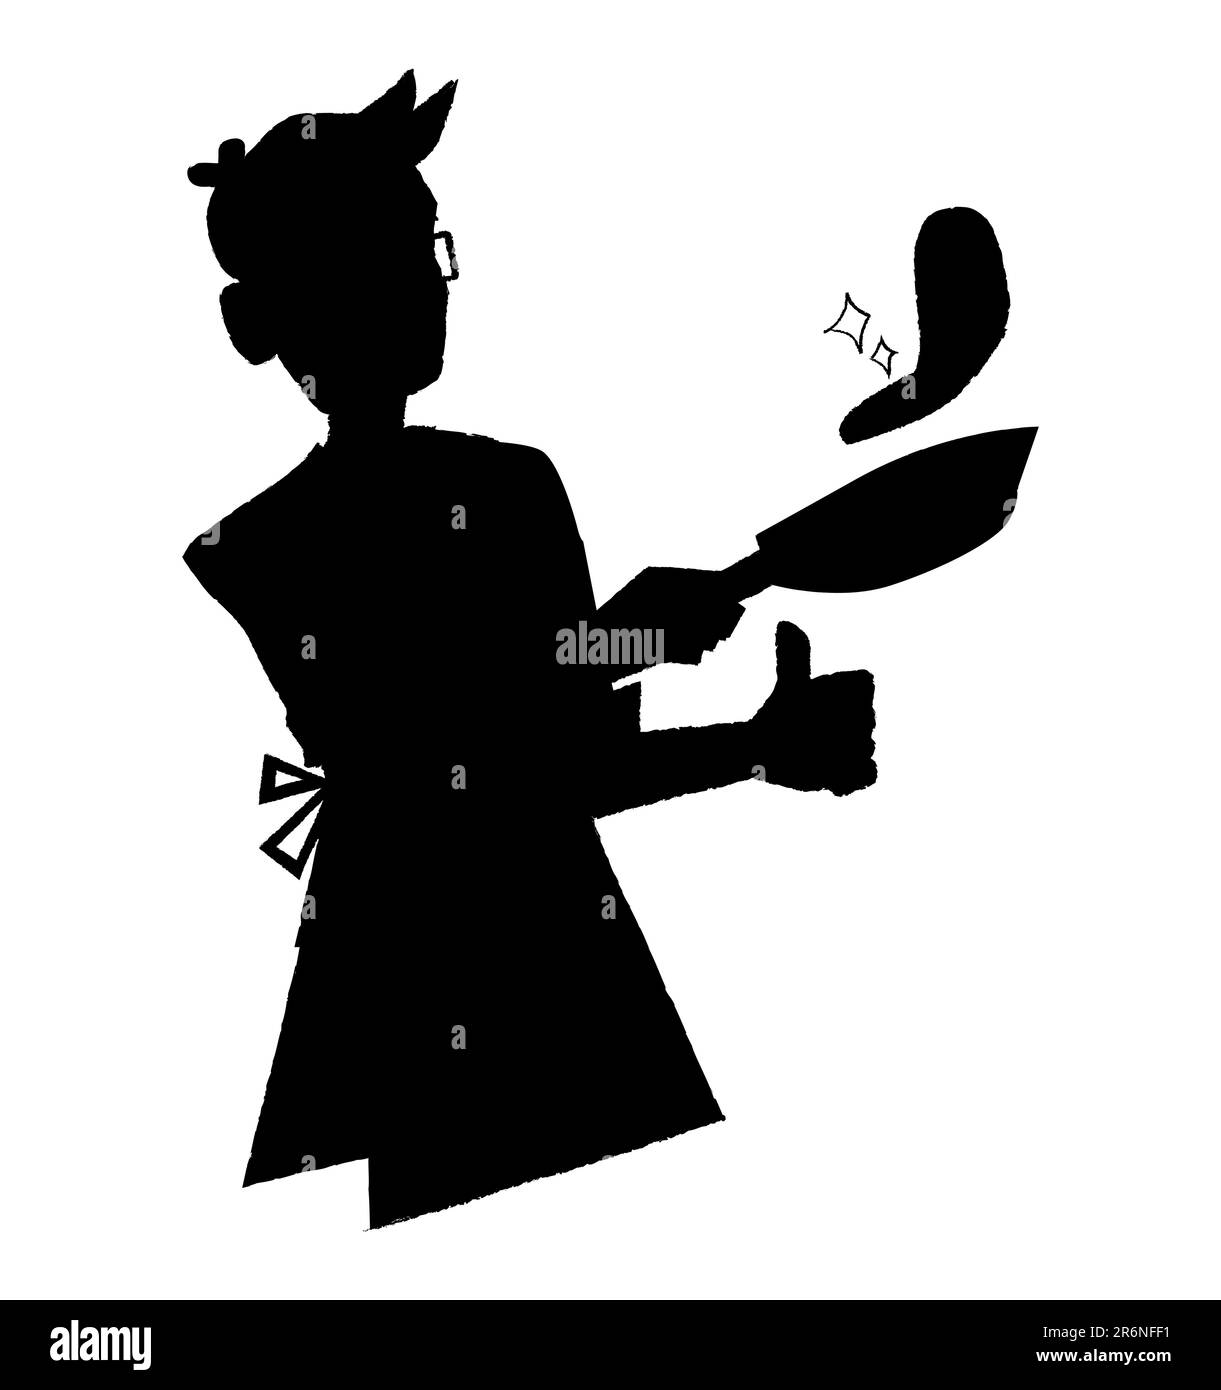 Silhouette nera di uno chef professionista che dà un pollice in su mentre cuoce bistecca in una padella, il logo e l'icona del cuoco, illustrazione vettoriale Illustrazione Vettoriale